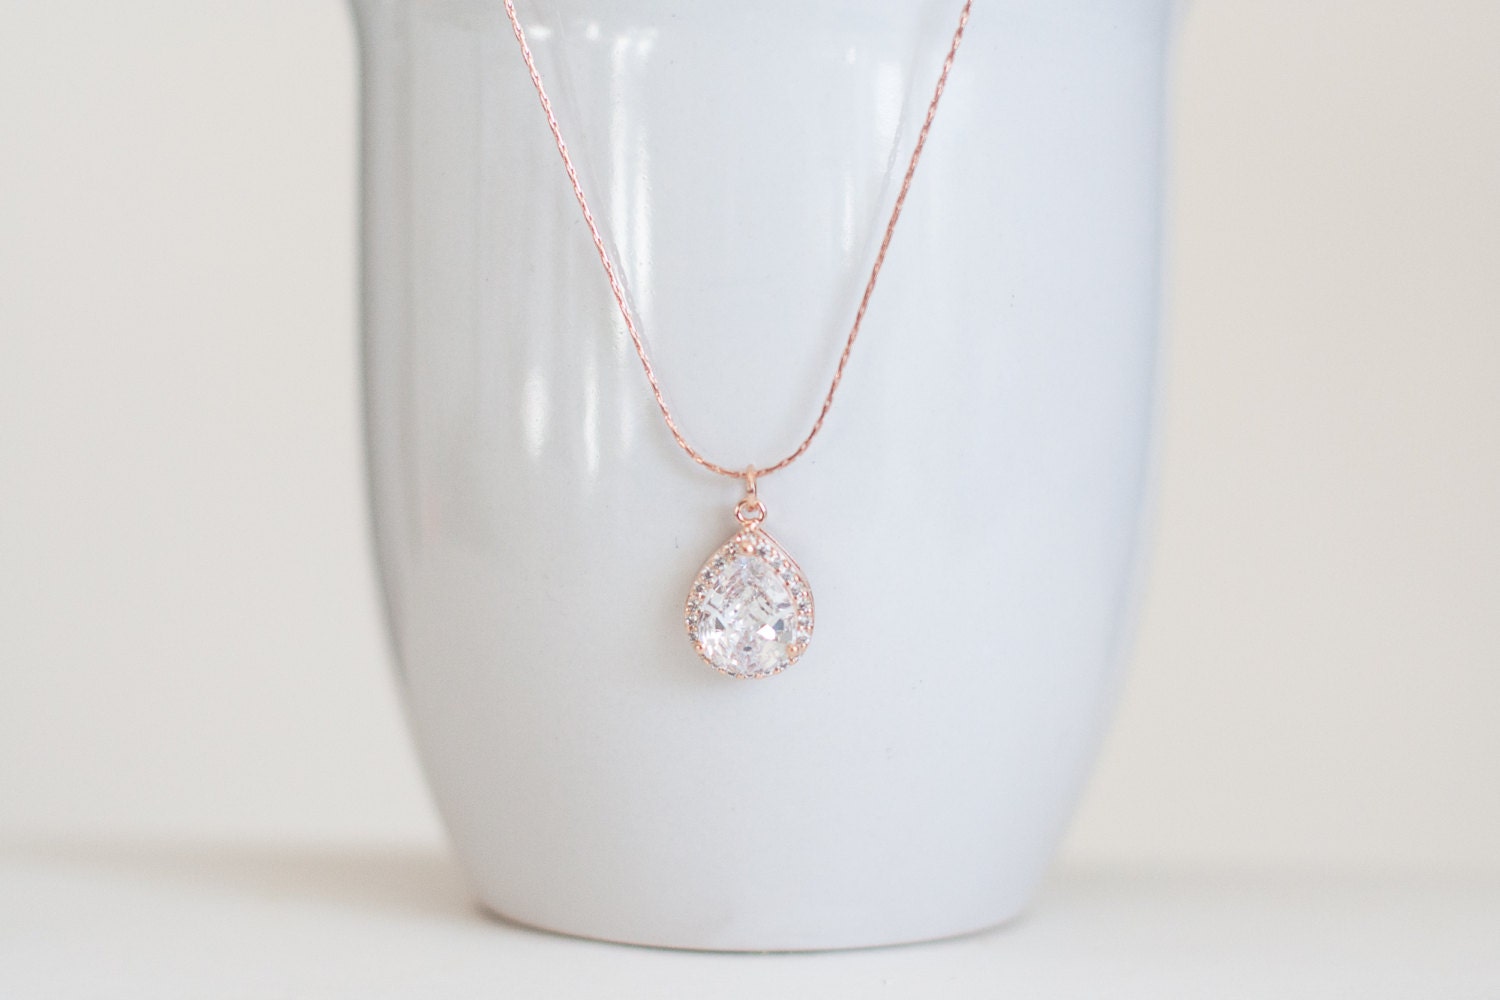 Rose gold diamond pendant necklace rose gold teardrop necklace